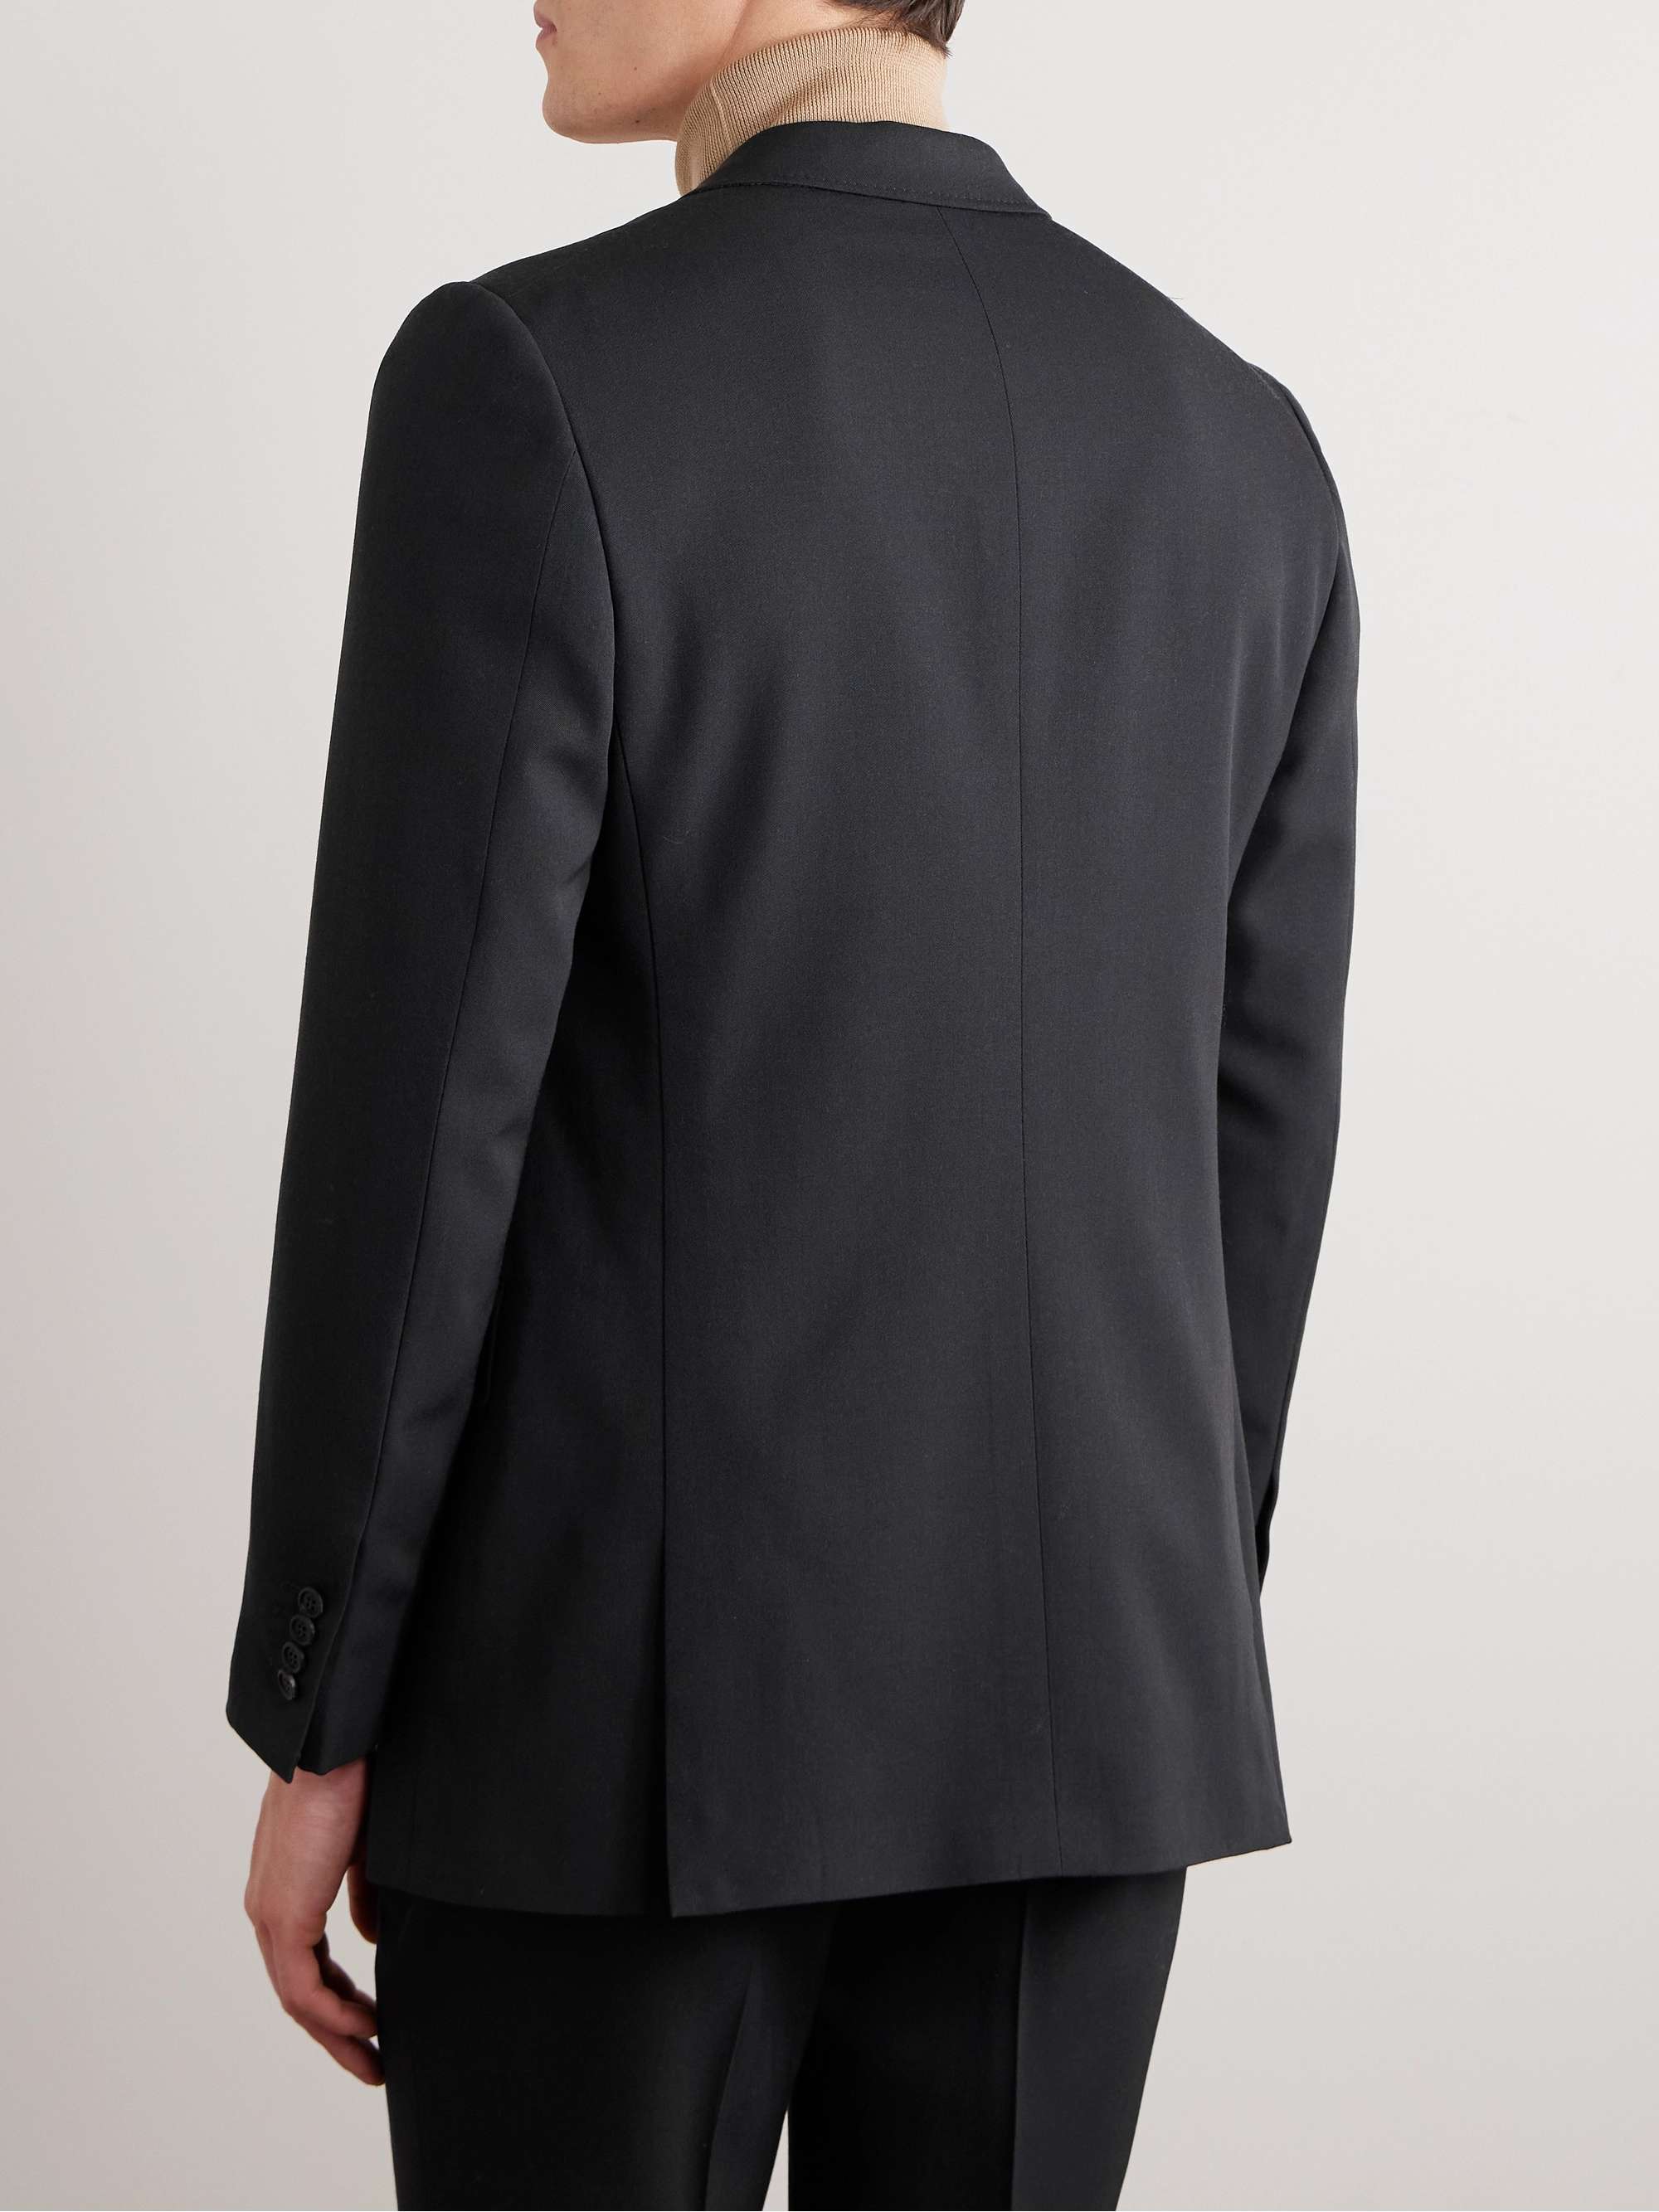 GABRIELA HEARST Irving Wool Suit Jacket for Men | MR PORTER